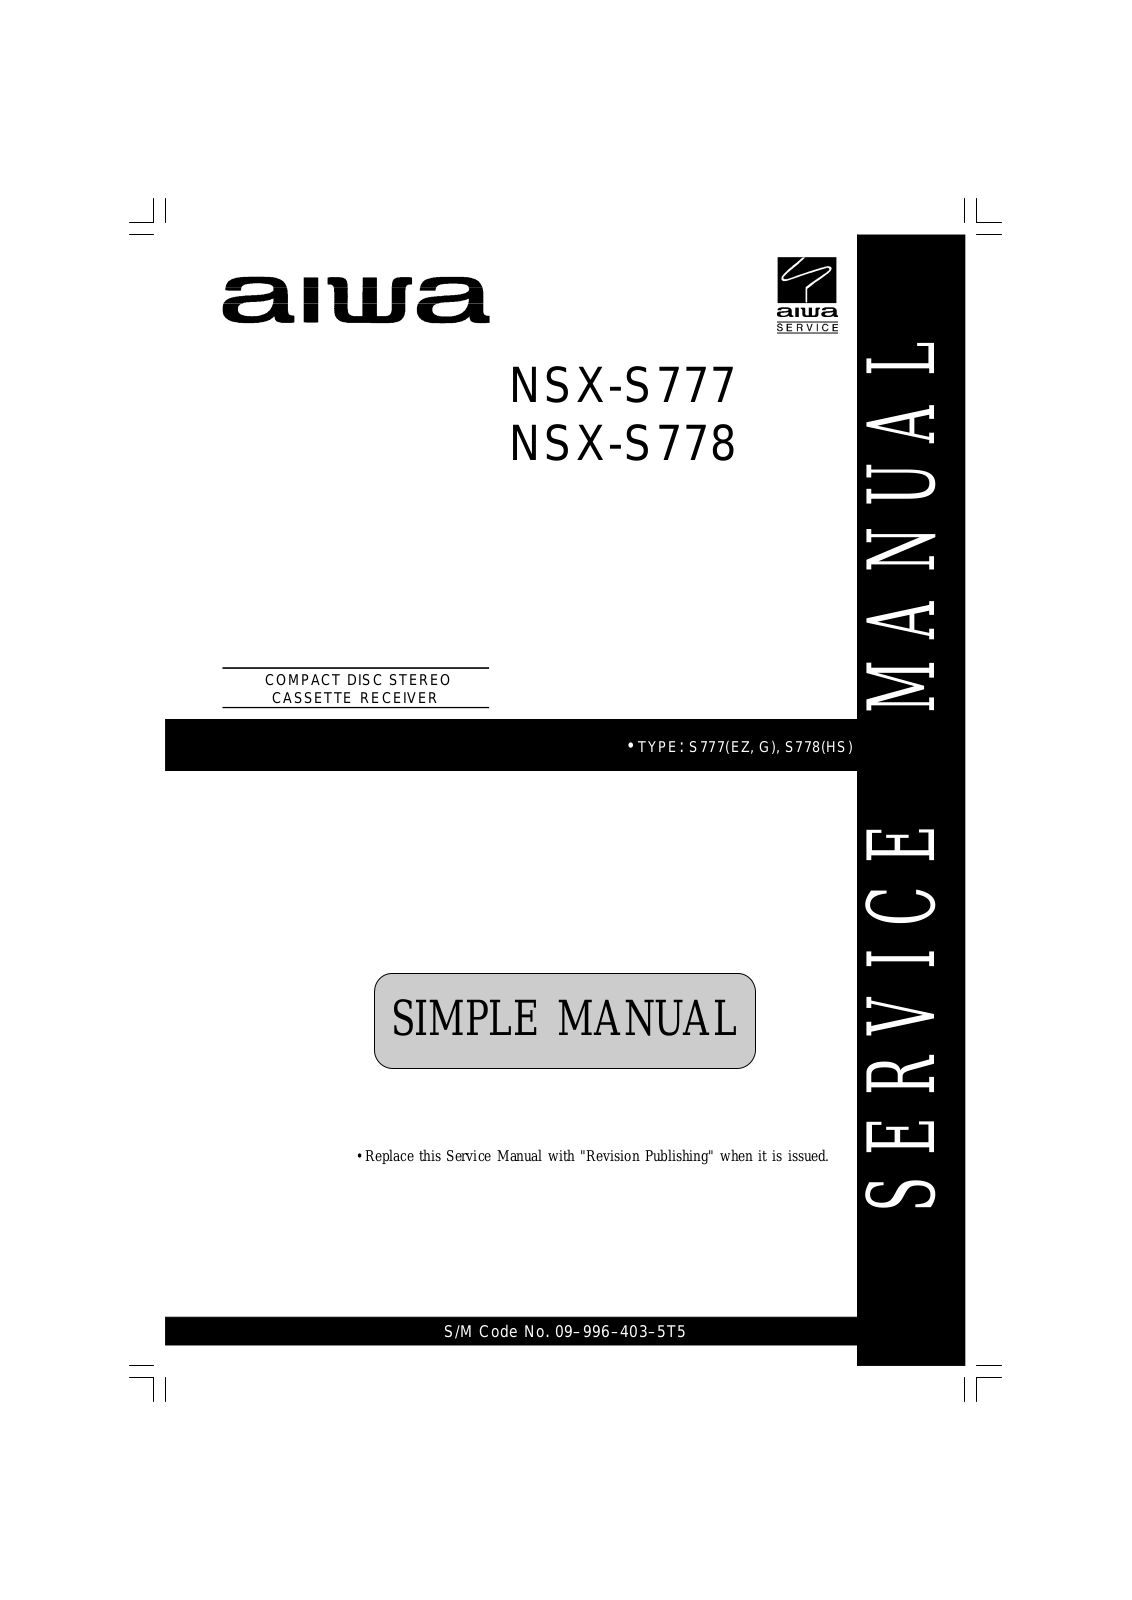 Aiwa NSXS-777, NSXS-778 Service manual